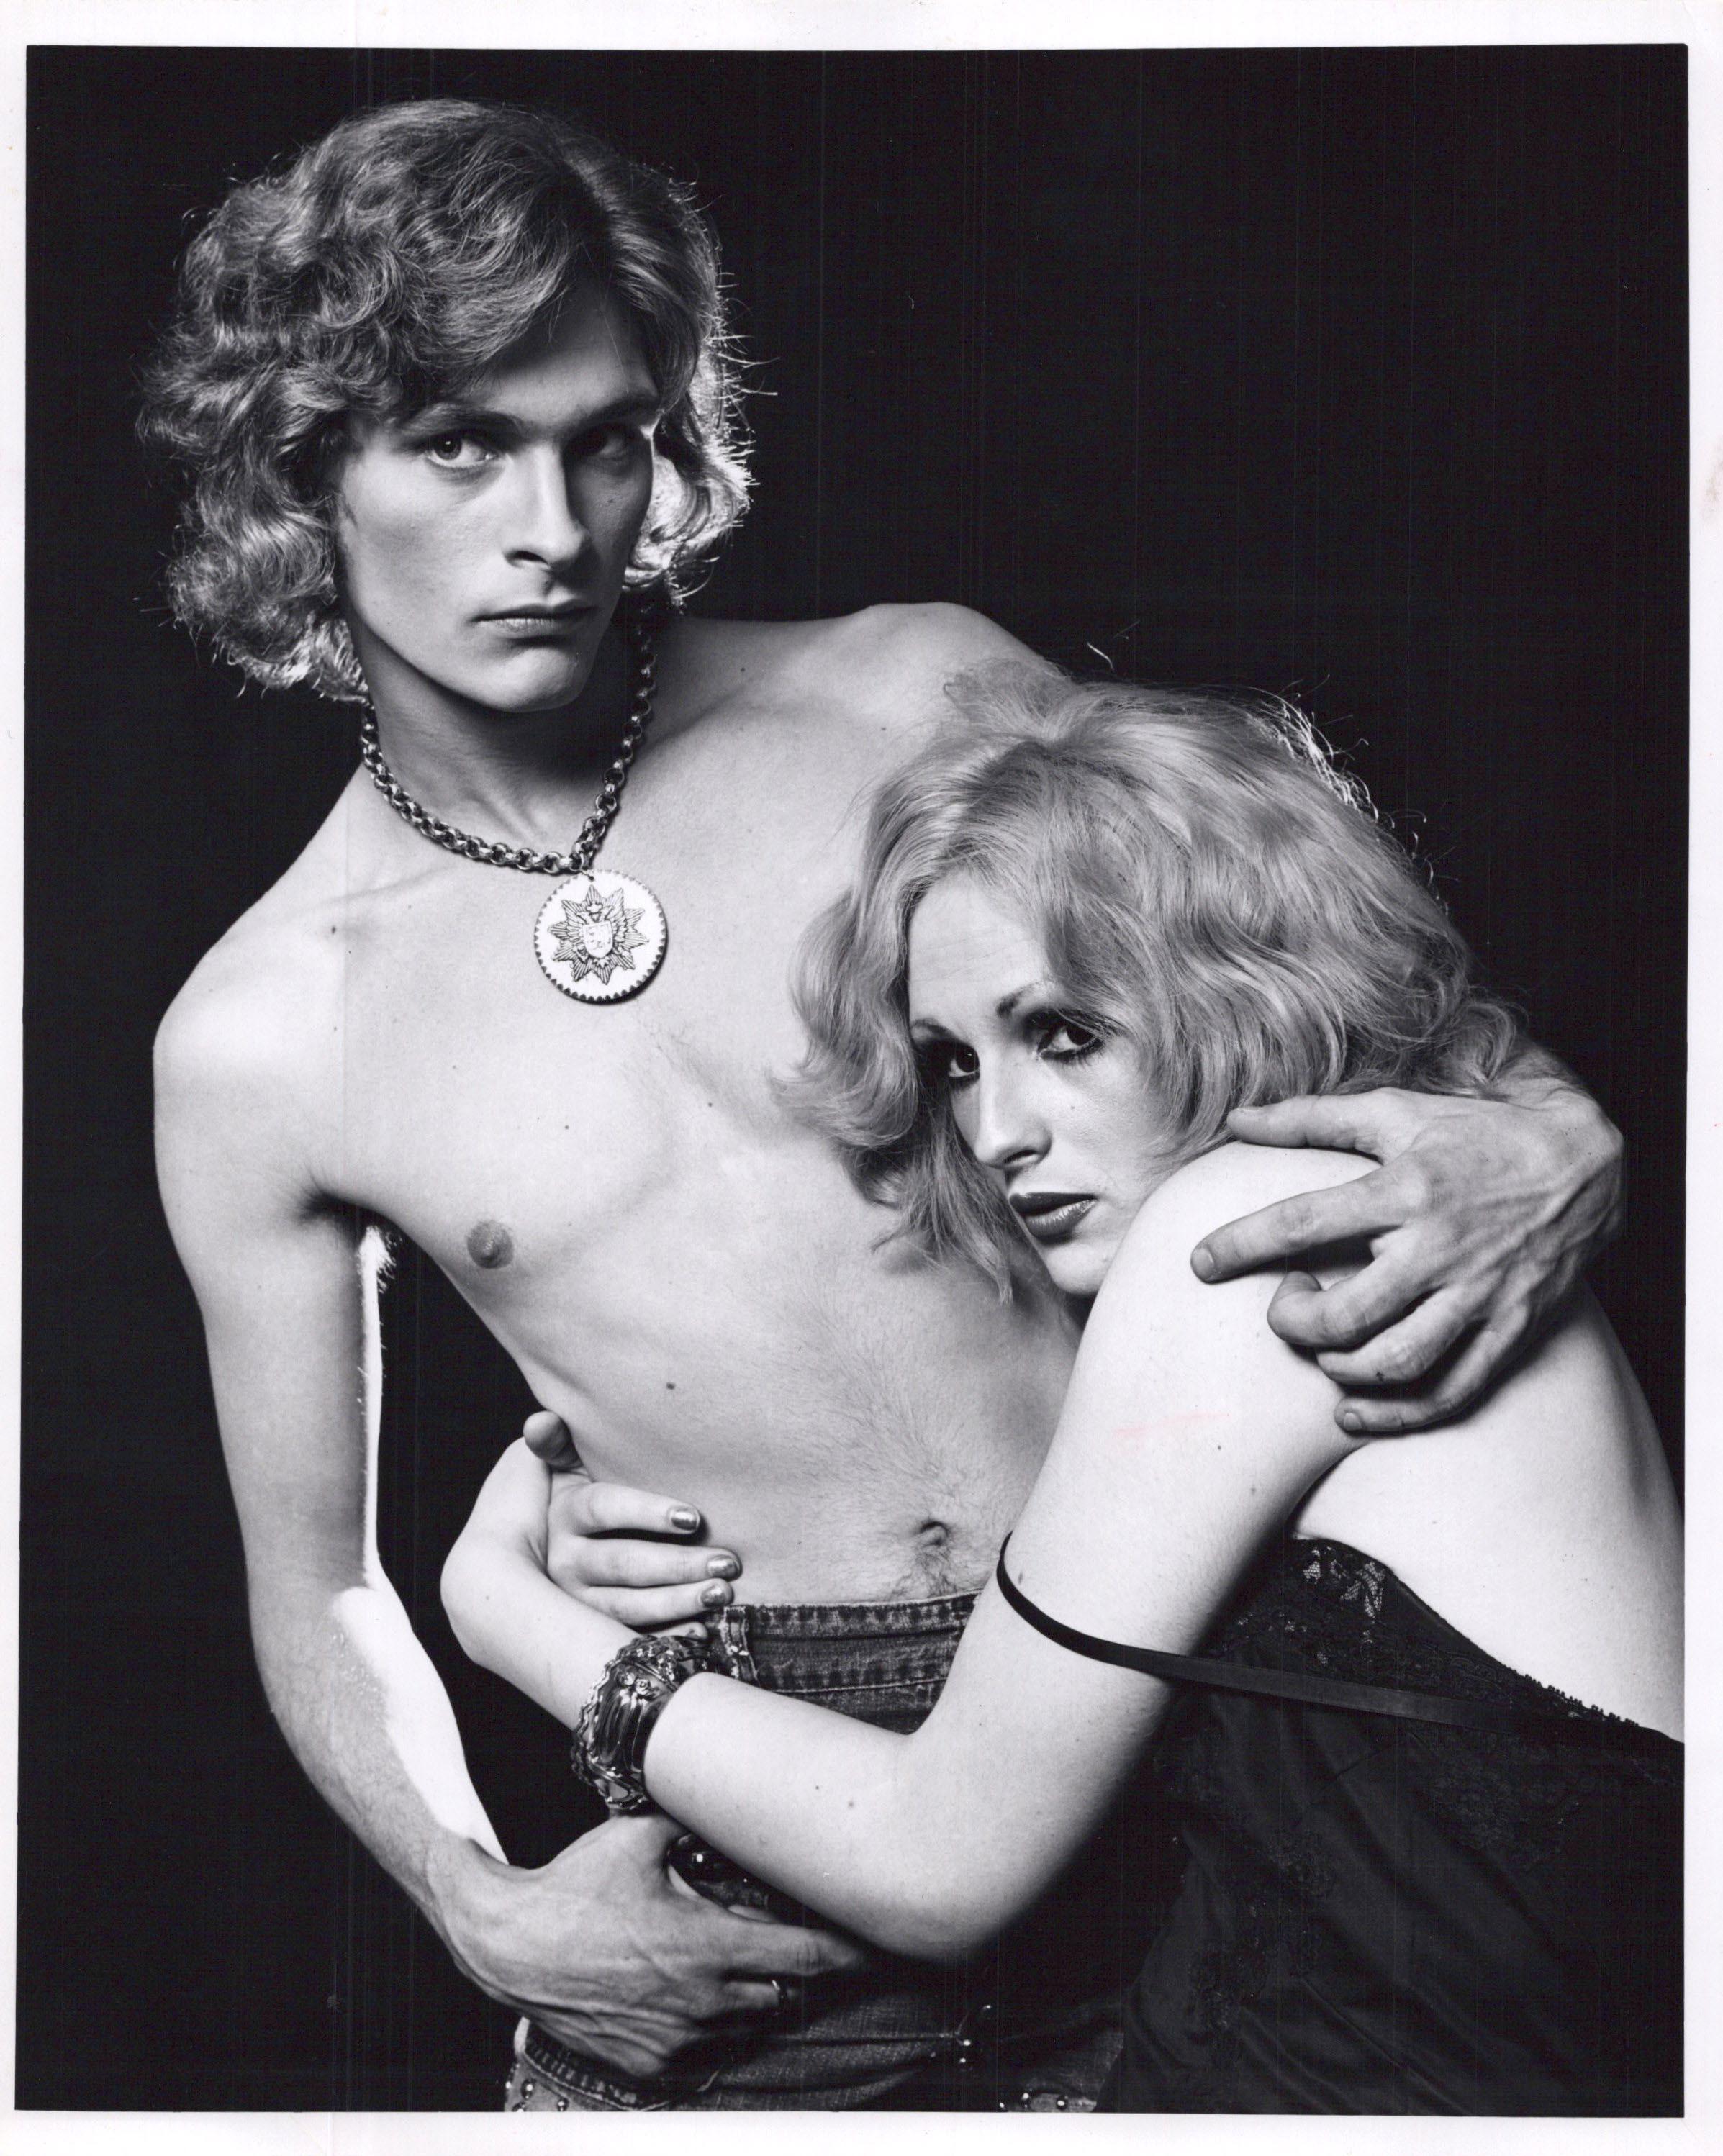 Jack Mitchell Black and White Photograph – Superstar Candy Darling und Dorian Gray von Andy Warhol